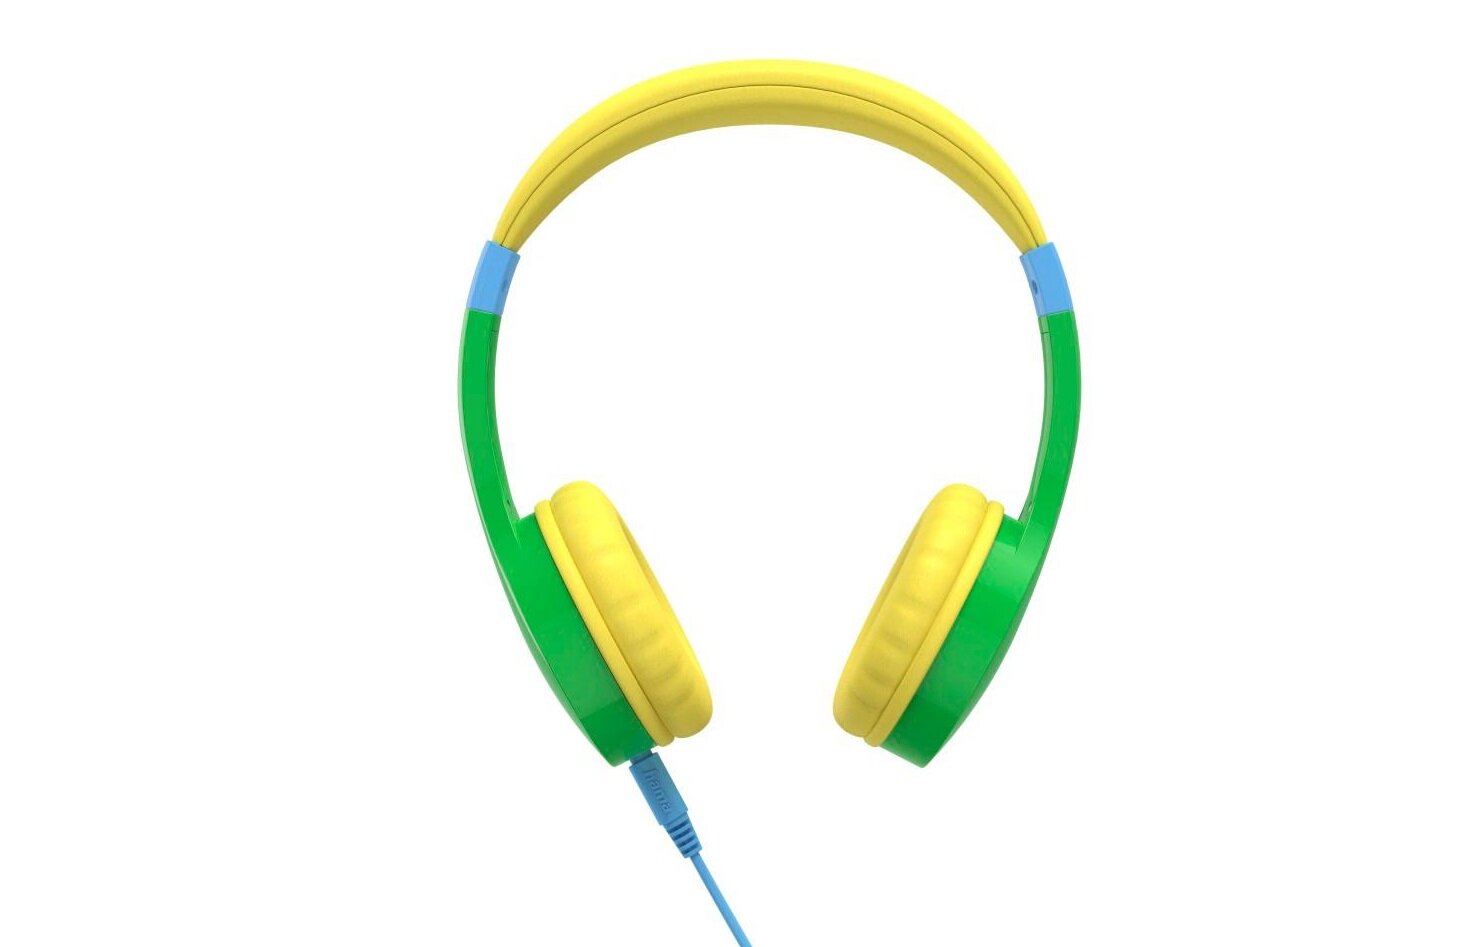 Bezpieczne słuchawki nauszne Hama Kids Guard dla dzieci z zabezpieczeniem przed przekroczeniem 85 dB